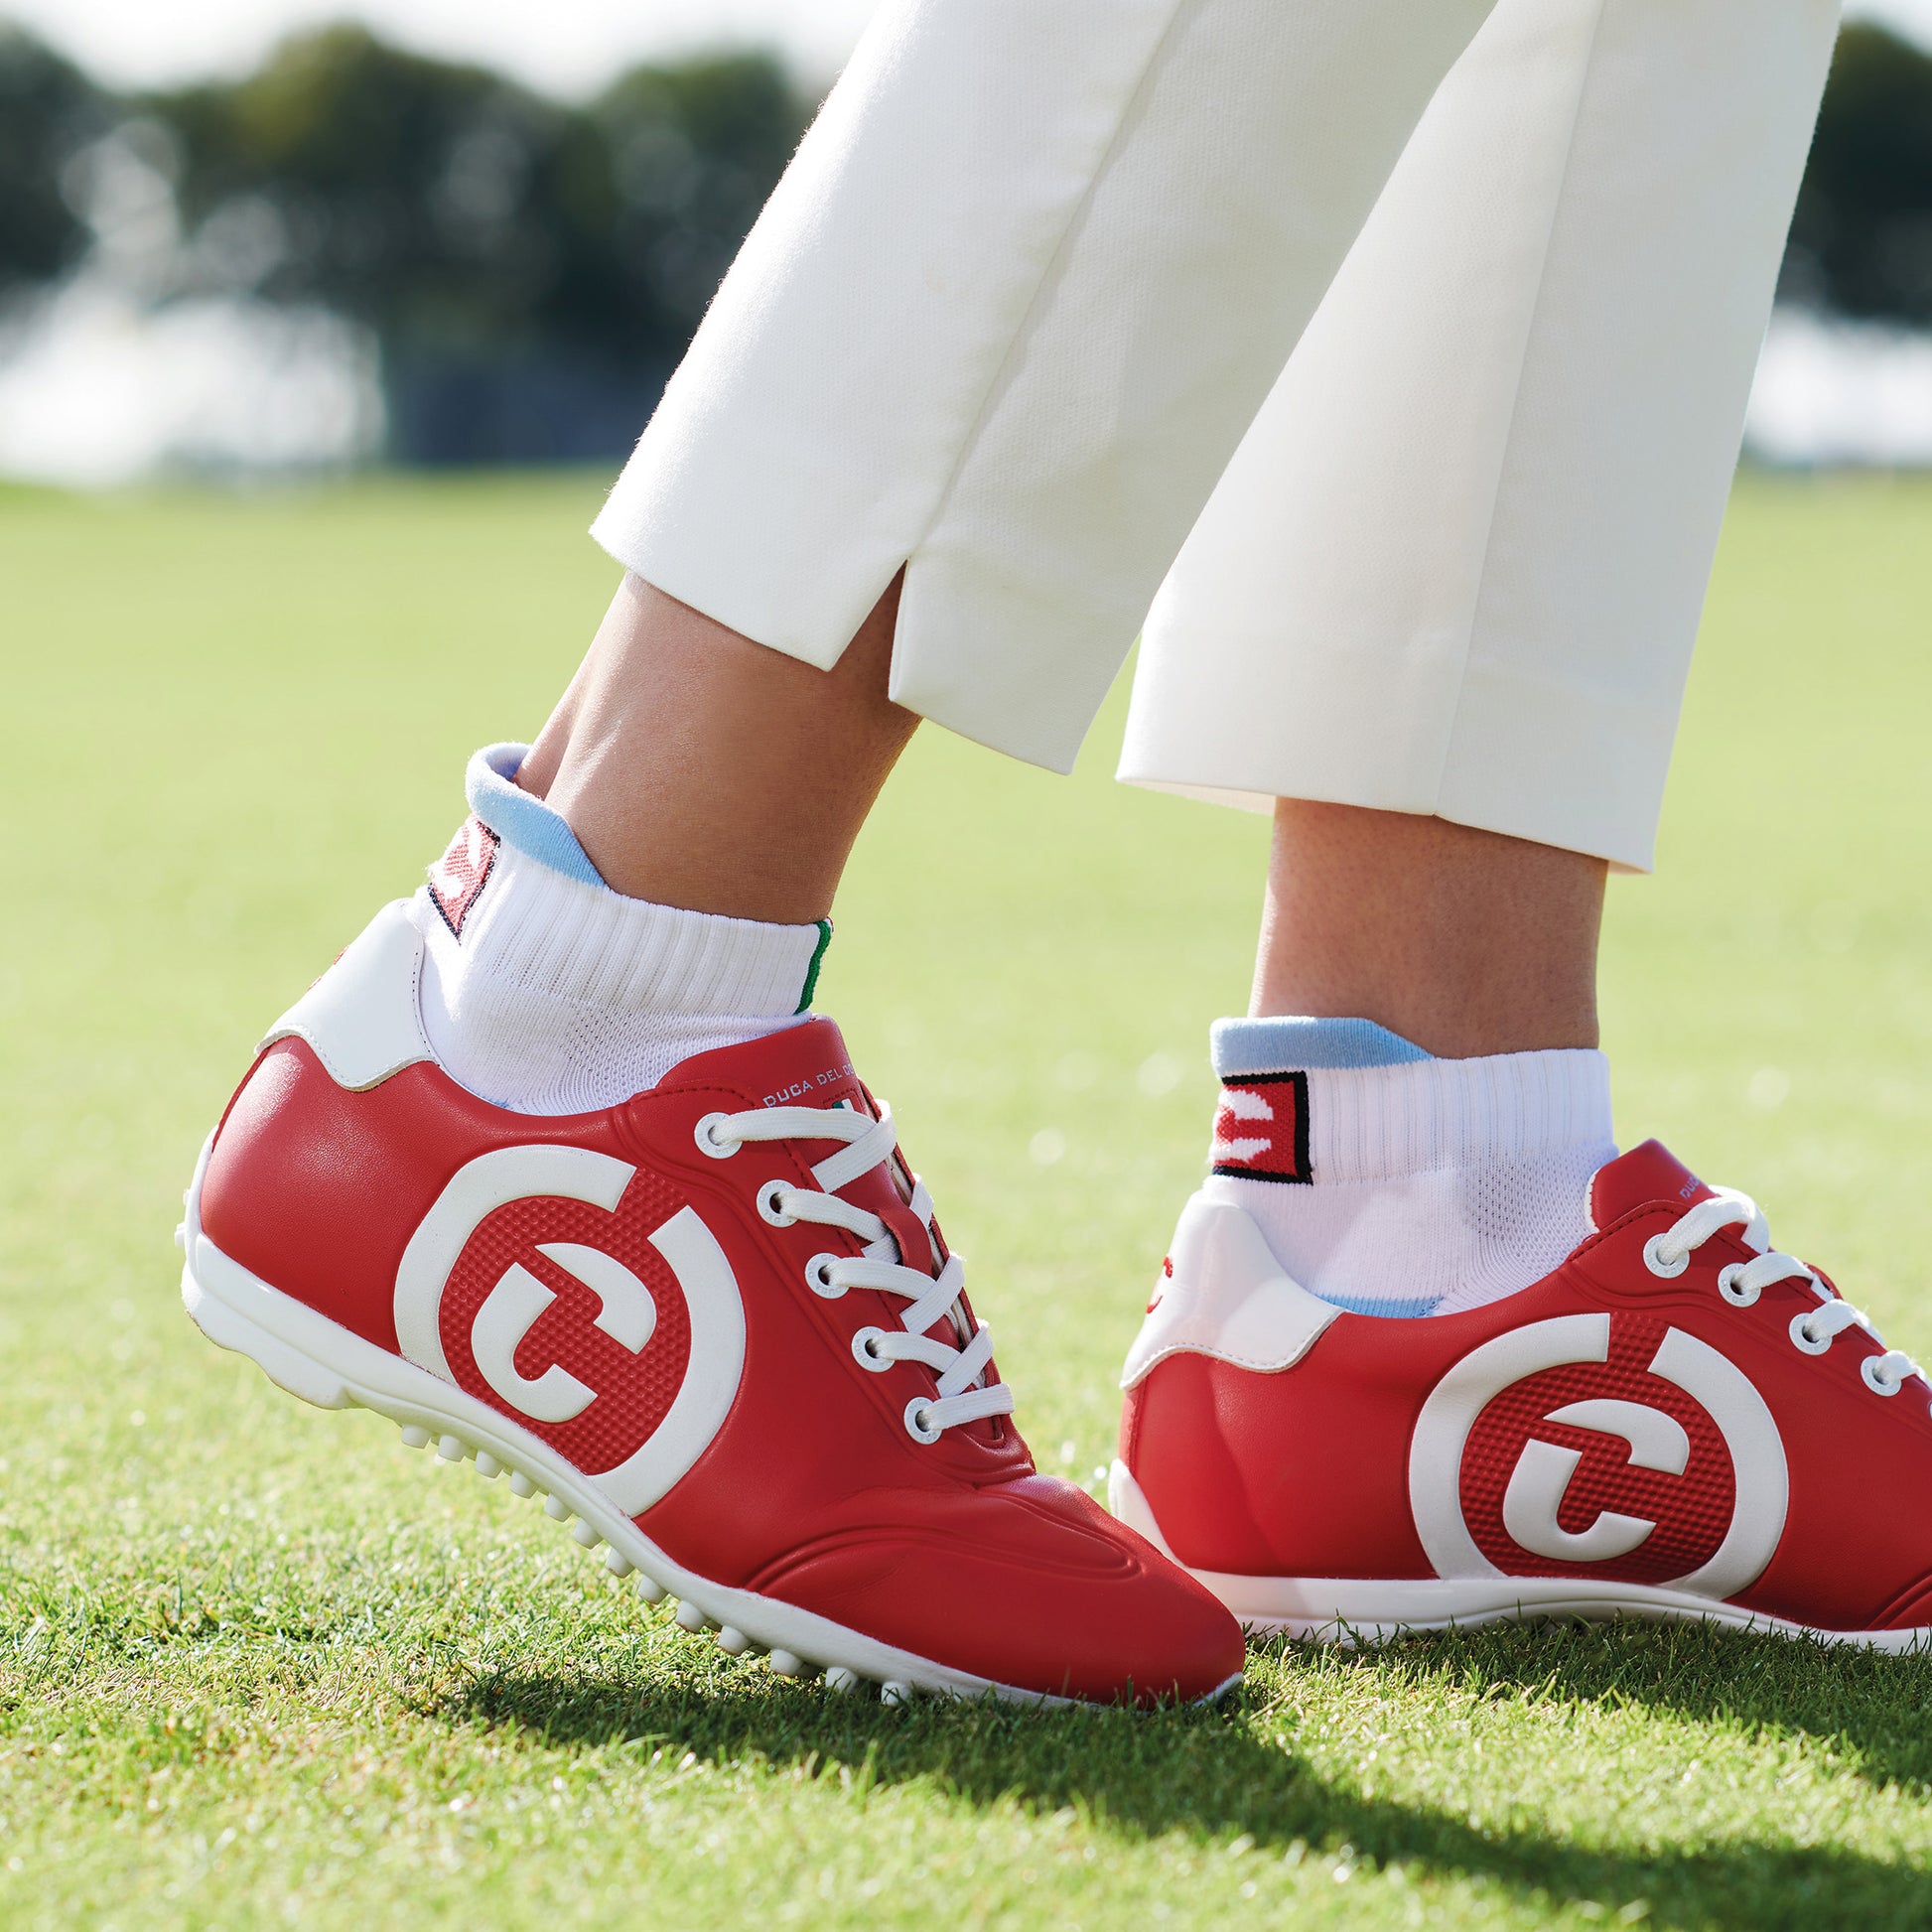 Women's Queenscup Red Golf Shoe